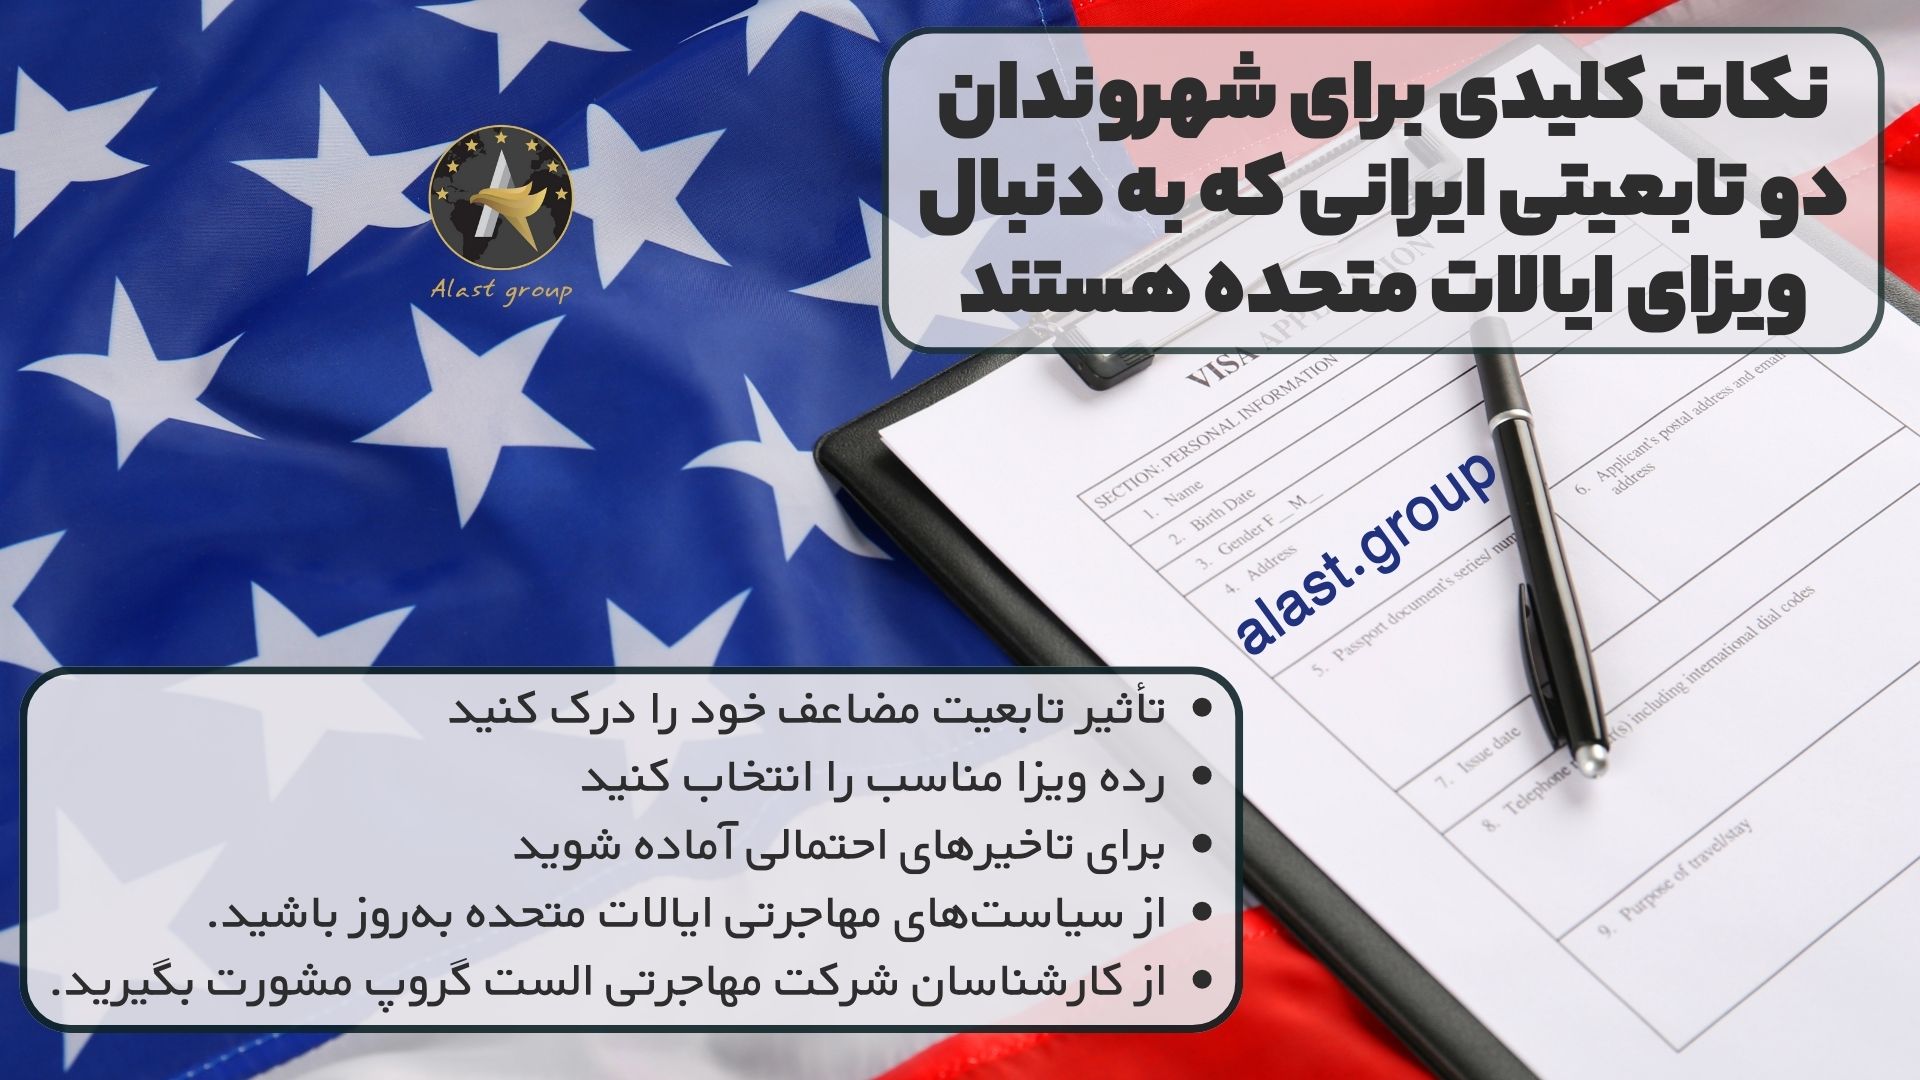 نکات کلیدی برای شهروندان دو تابعیتی ایرانی که به دنبال ویزای ایالات متحده هستند